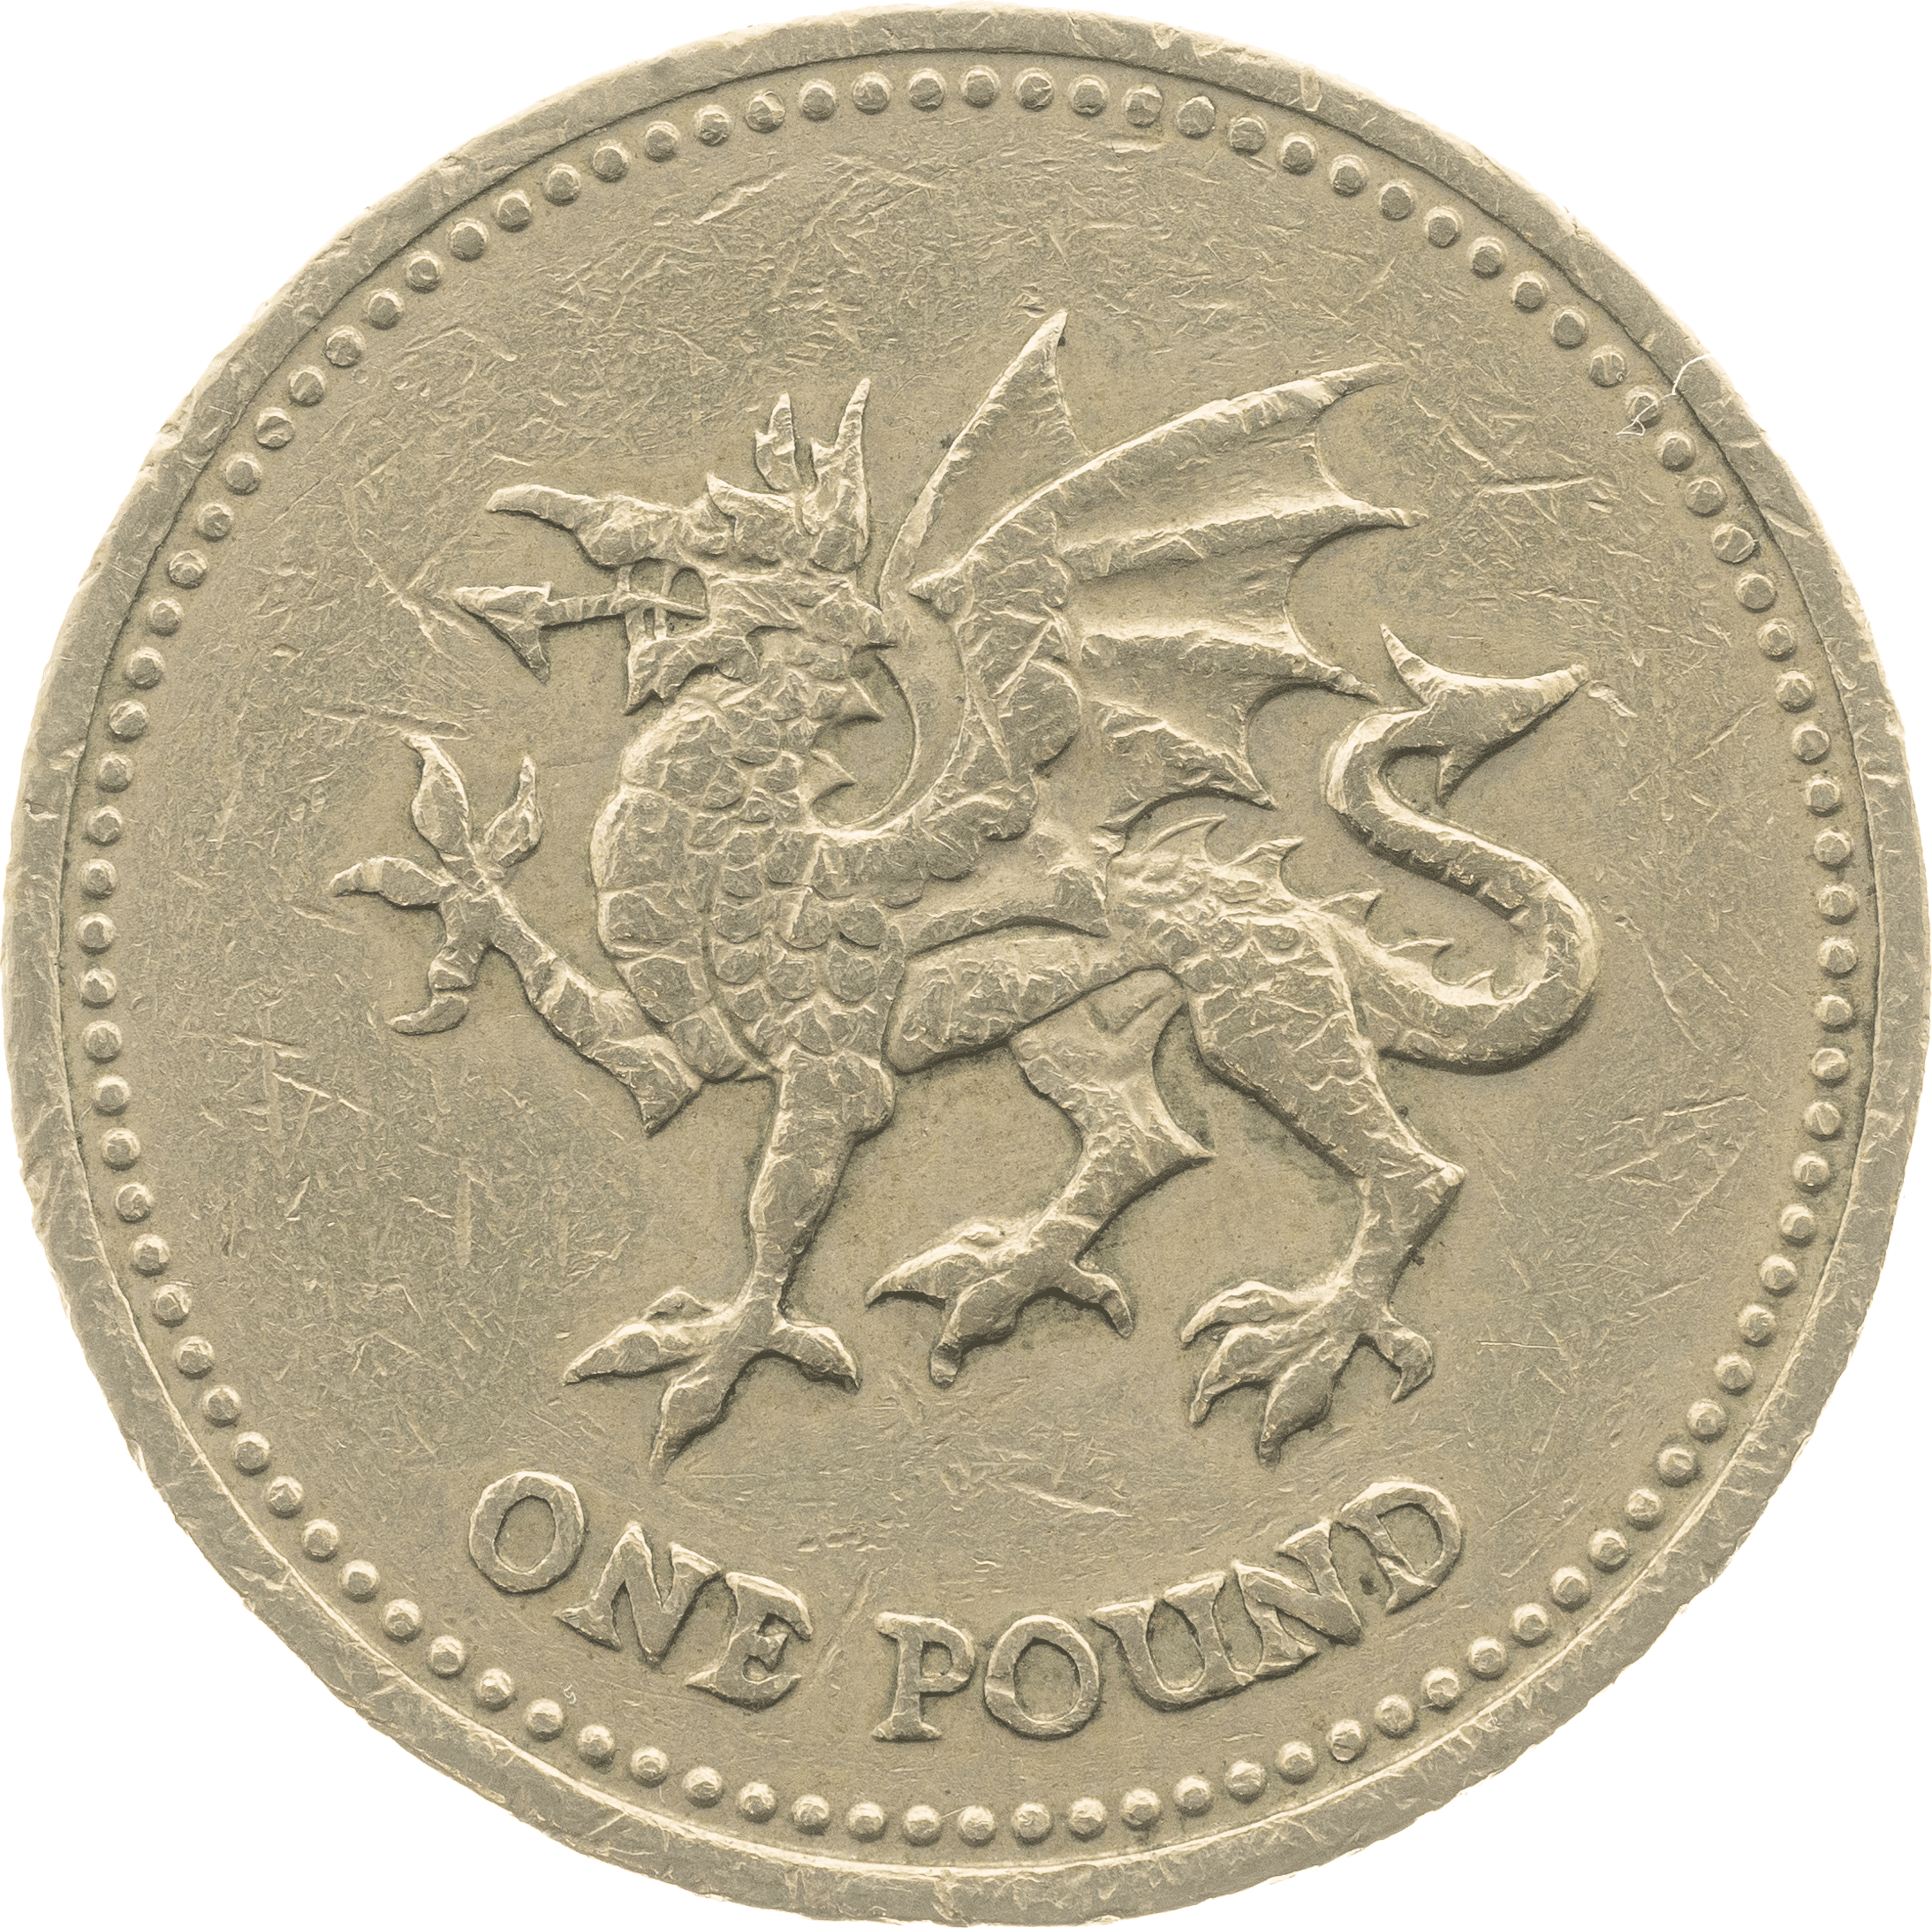 Dragon £1 Coin Design